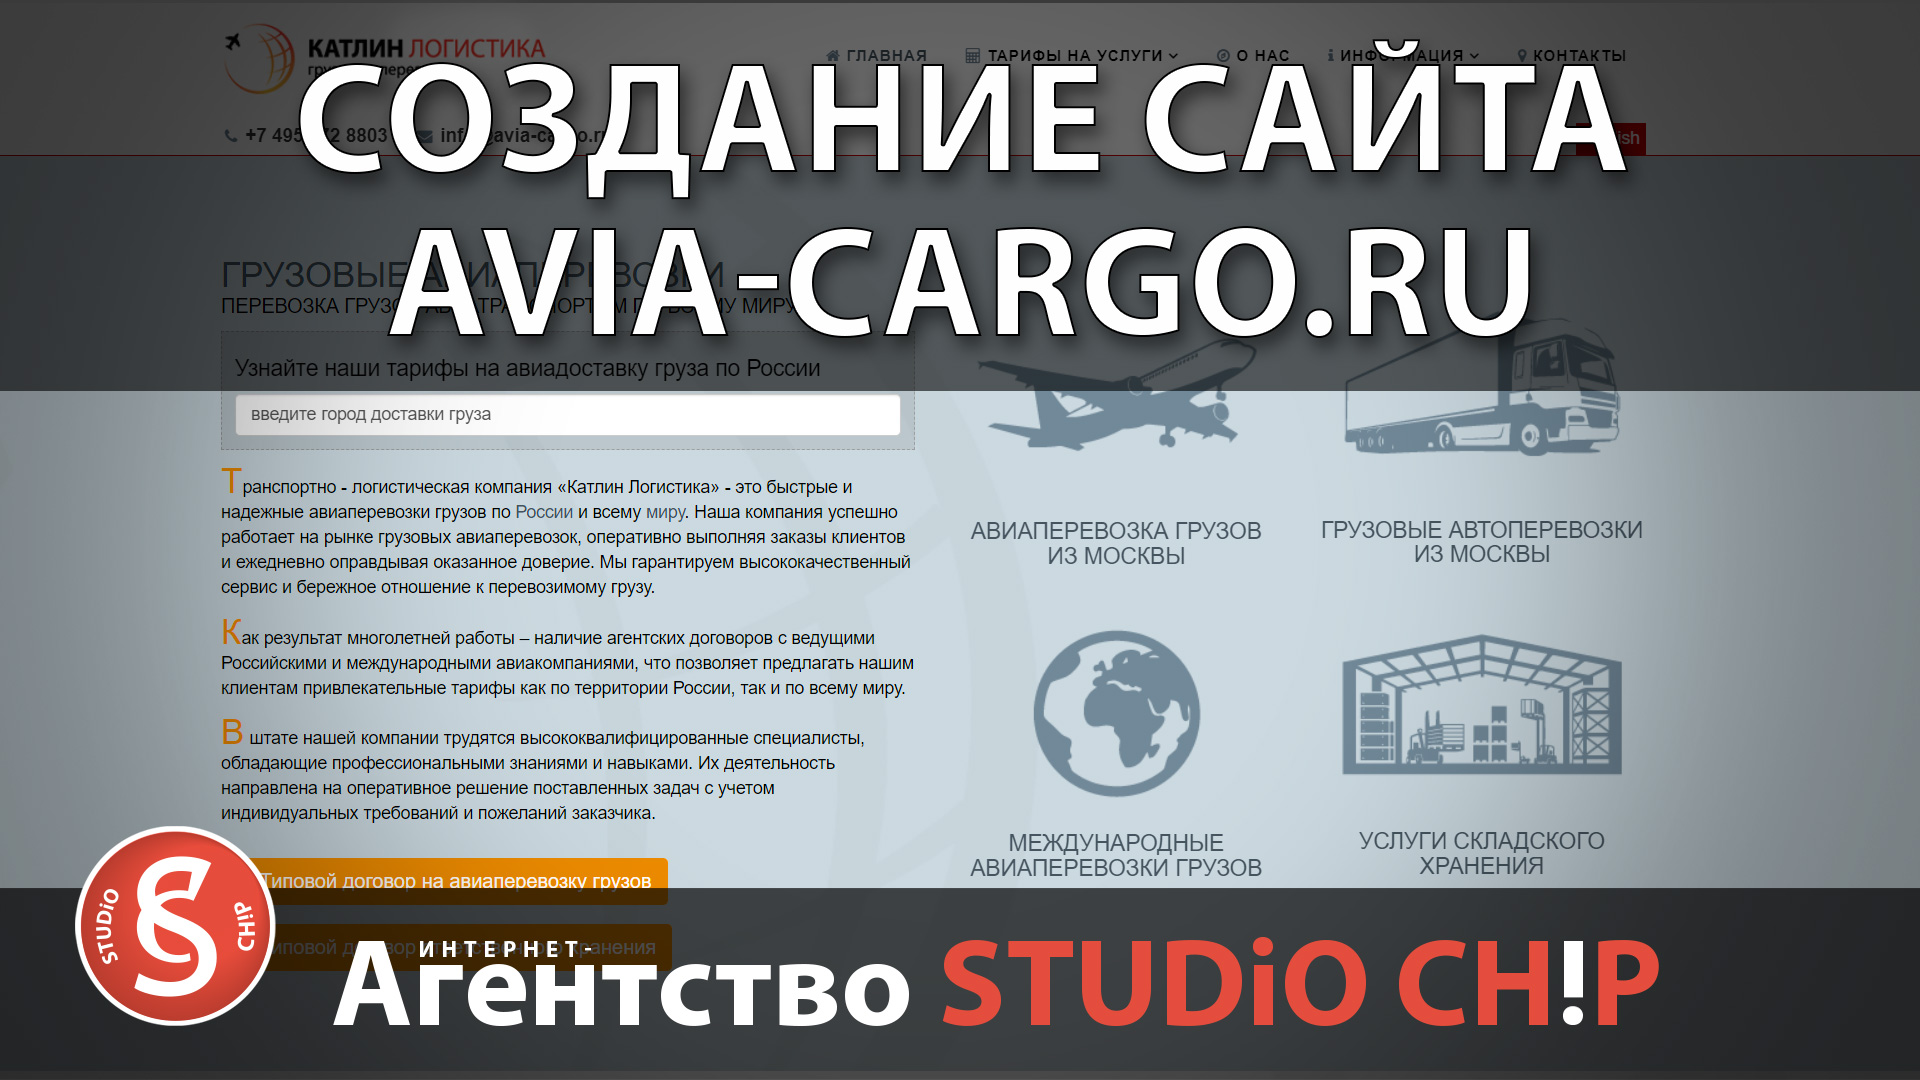 Создание поддержка и продвижение сайта в 2019 году - avia-cargo.ru  Интернет-агентство STUDiO CHiP.